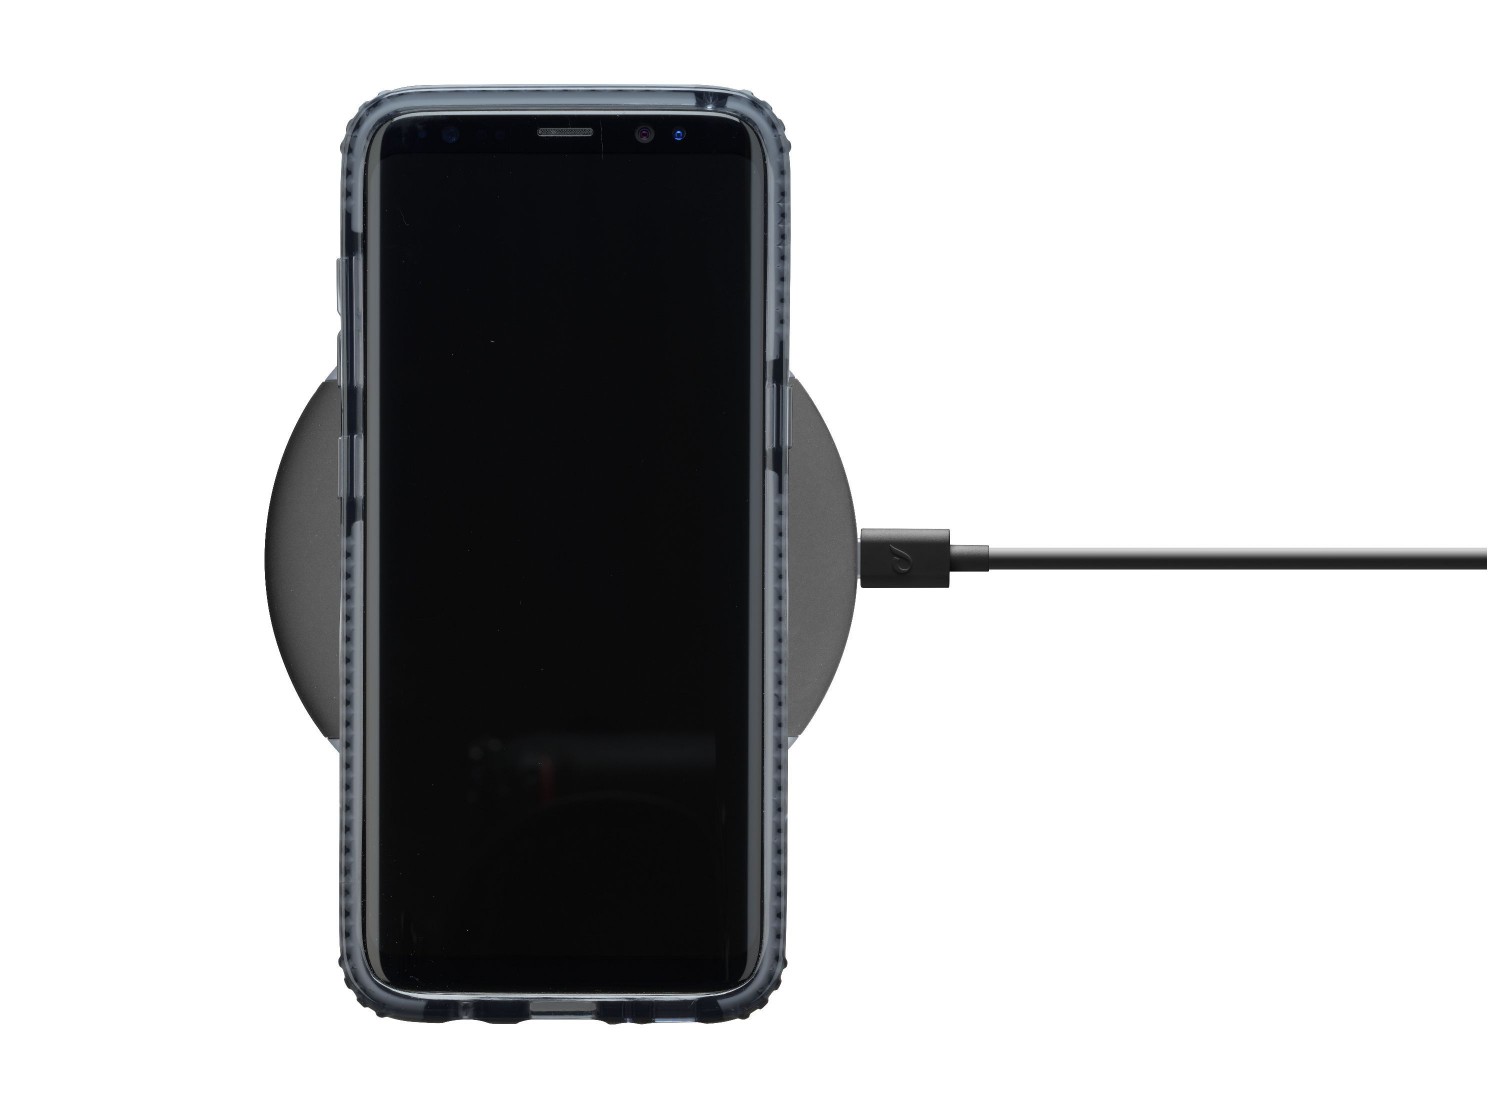 Bezdrátová nabíječka Cellularline Wireless Fast Charger + Fast Charge adaptér 10W, Qi standard černá